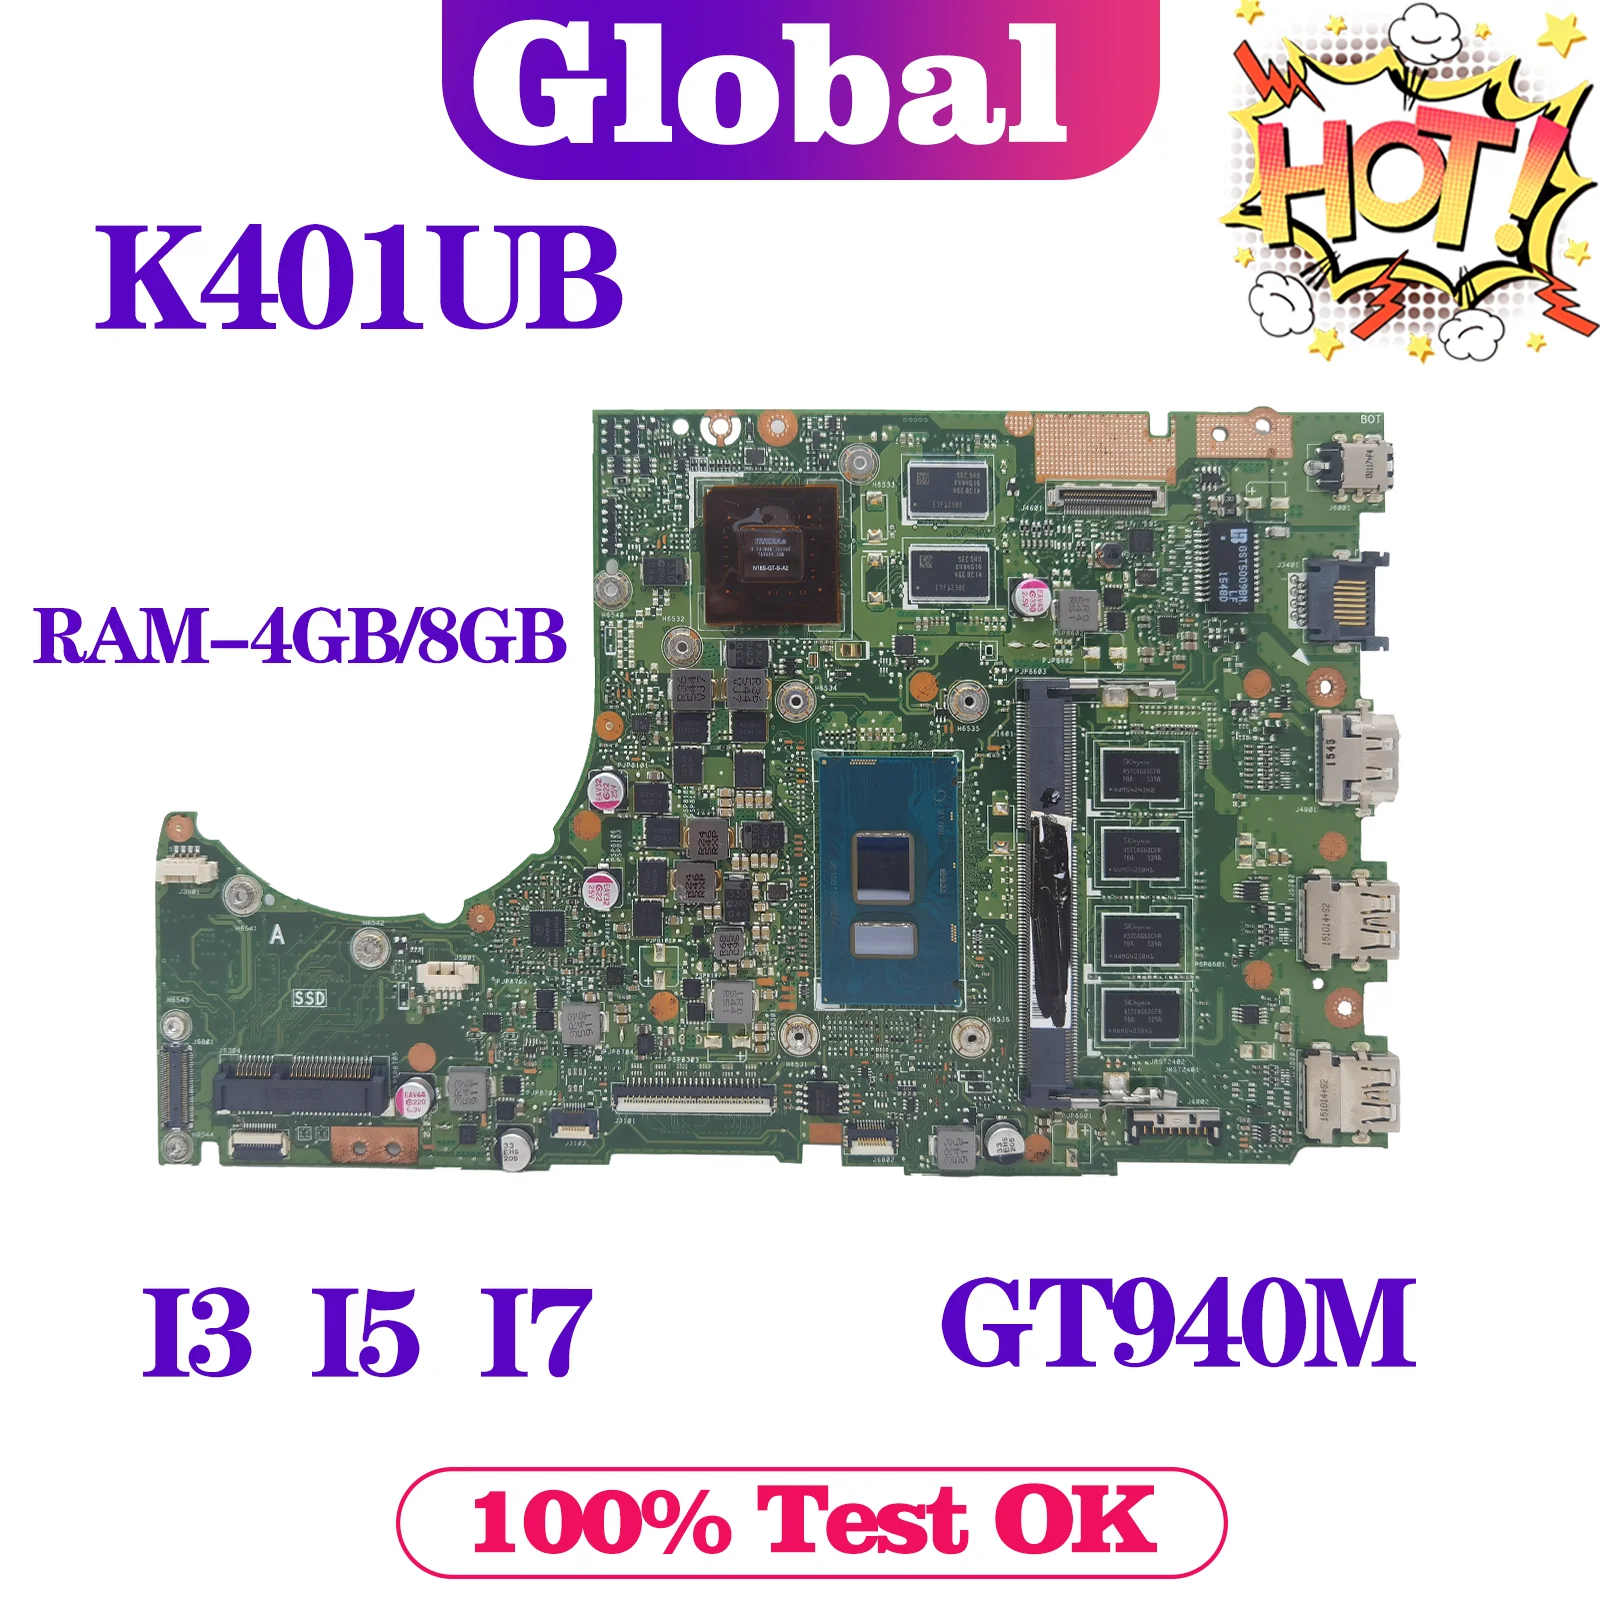 

Notebook K401UB Mainboard For ASUS K401UQ K401UQK A401U V401U K401U A400U Laptop Motherboard i3 i5 i7 6th/7th 4GB/8GB-RAM GT940M